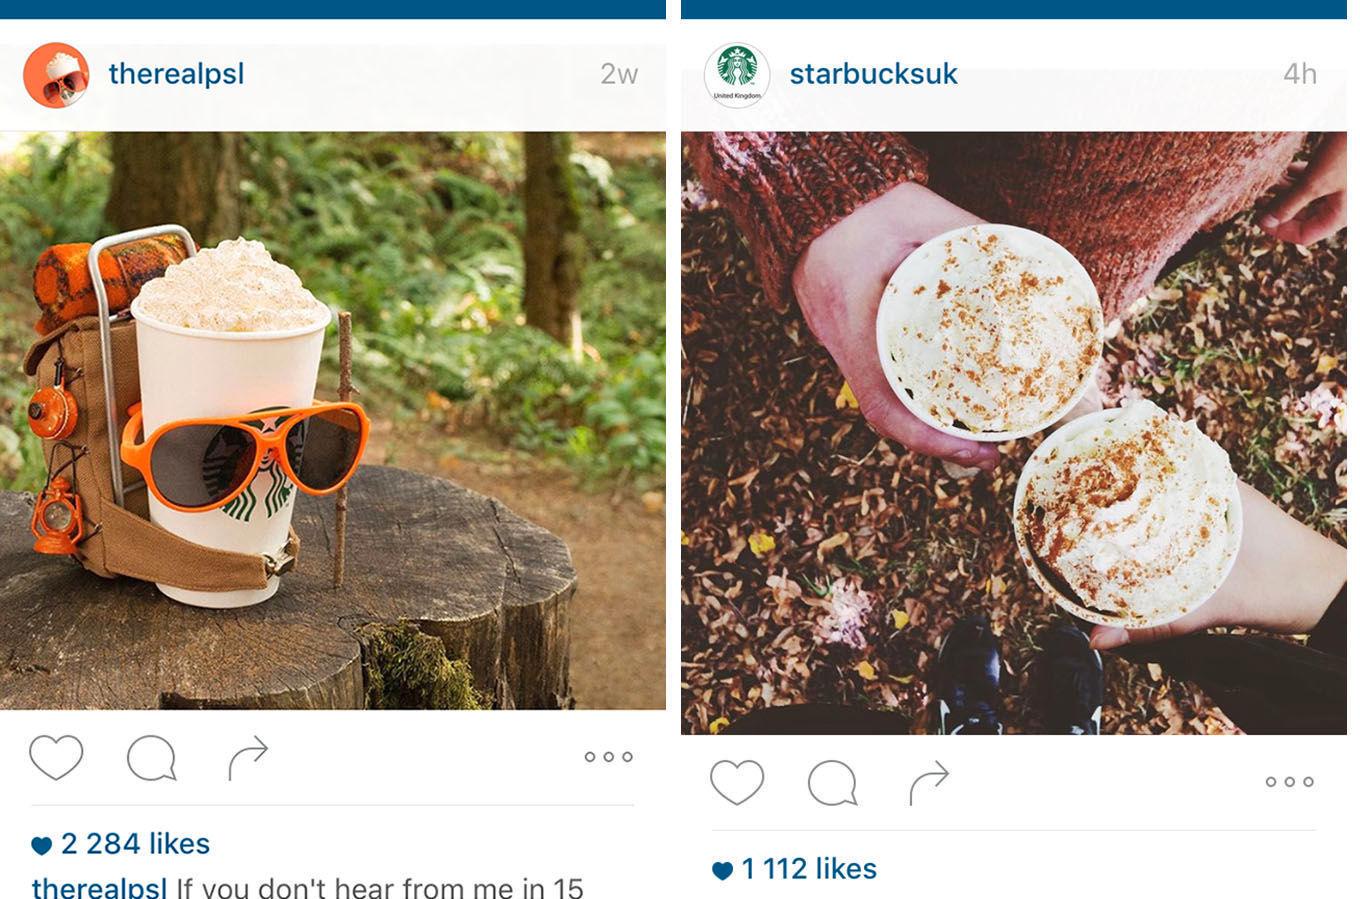 VINNER SOSIALE MEDIER: PSL er en svært populær kaffe. Også på sosiale medier. Foto: Instagram/@therealpsl/@starbucksuk.